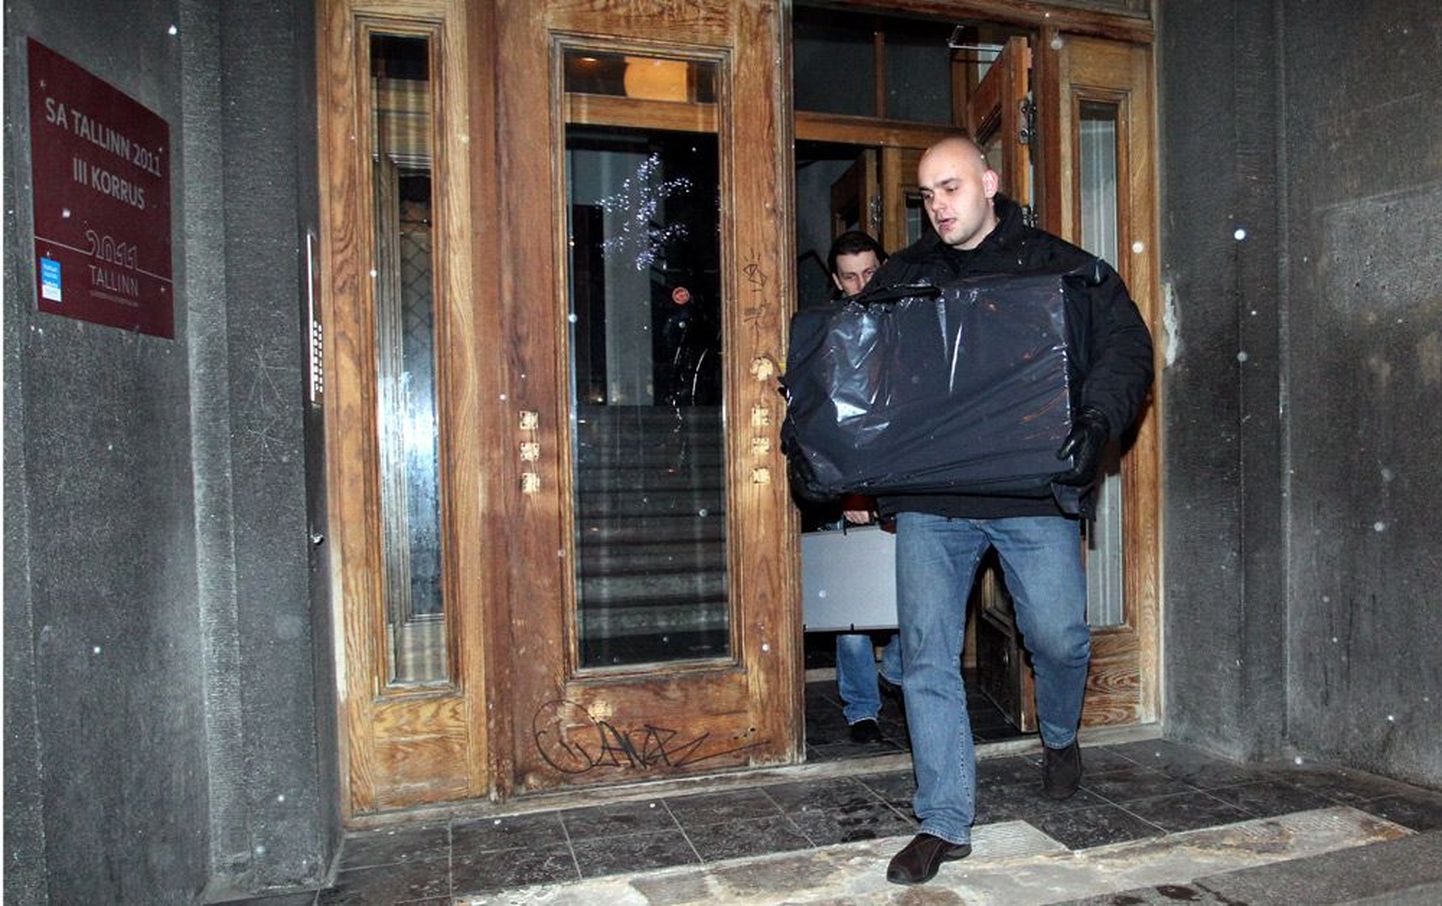 Kaitsepolitseinikud  lahkumas kuu alguses läbi otsitud SA Tallinn 2011 ruumidest.